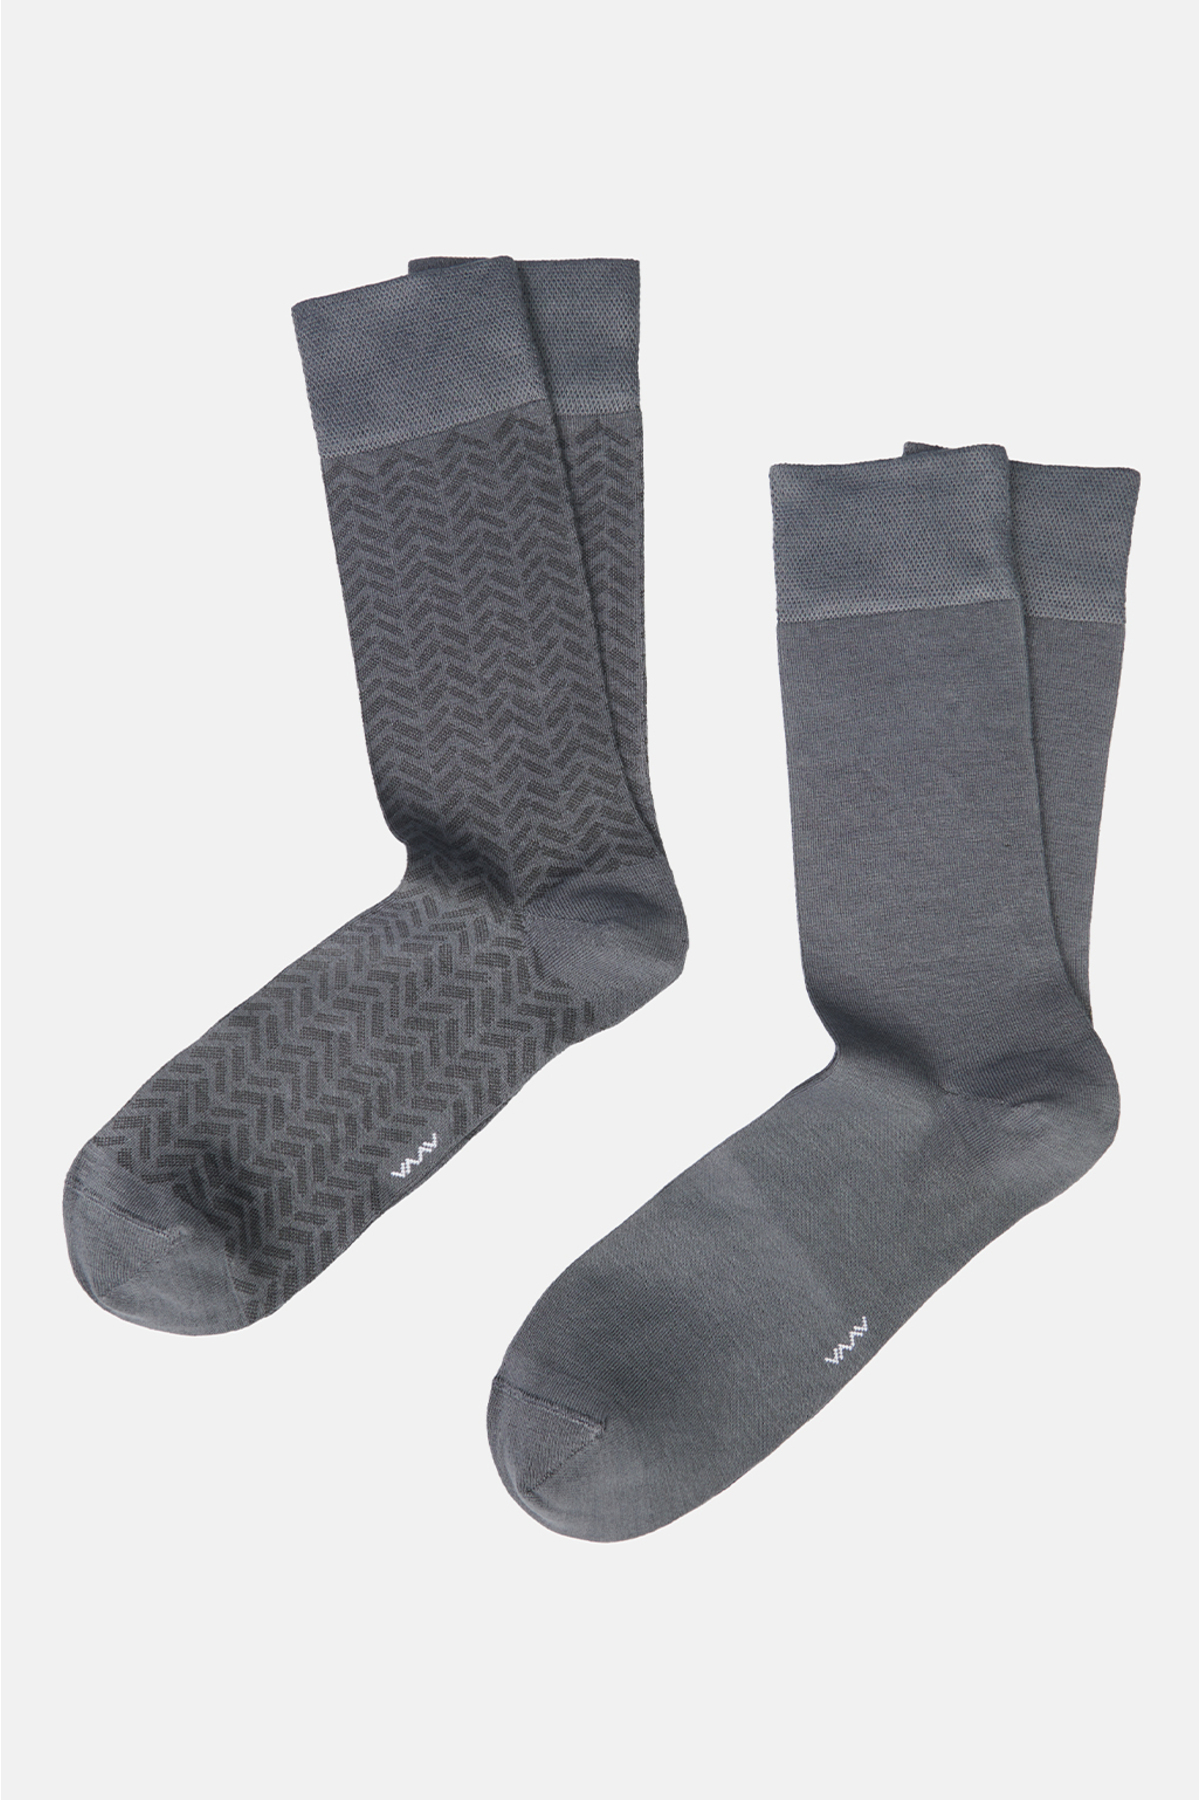 Avva Men's Gray Patterned 2-Pack Socks